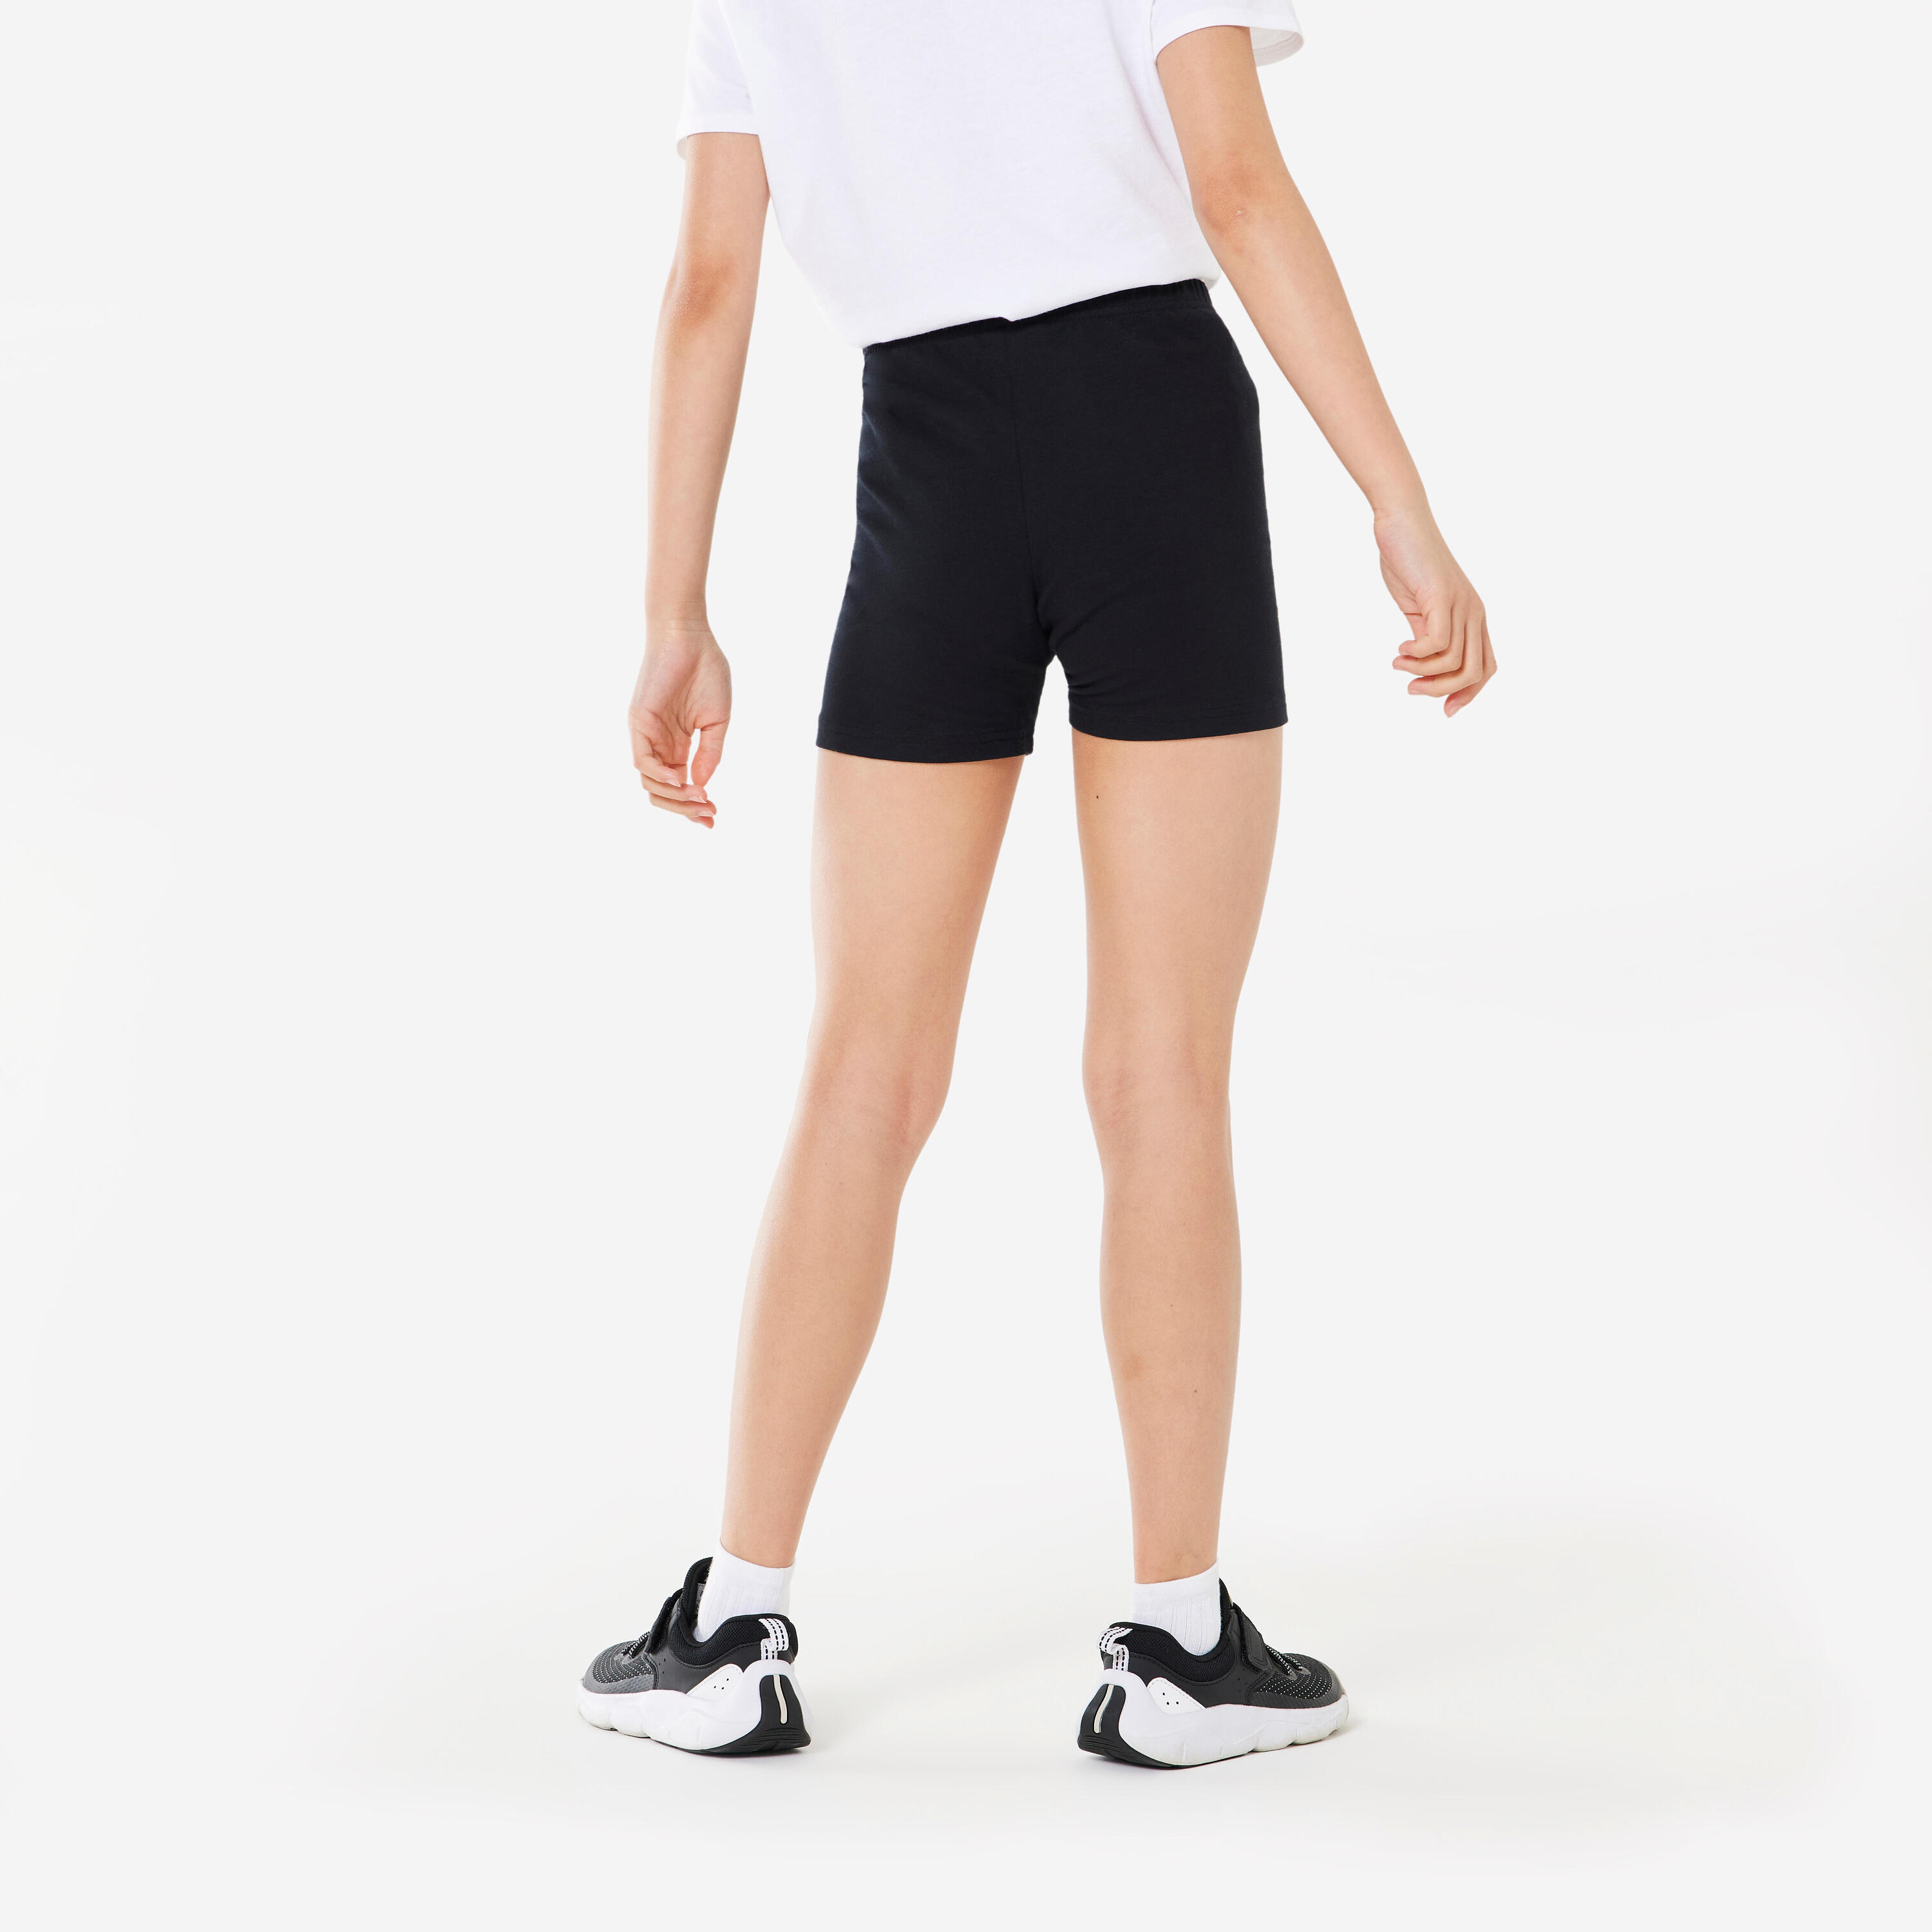 Girls' Basic Cotton Shorts - Black 4/4